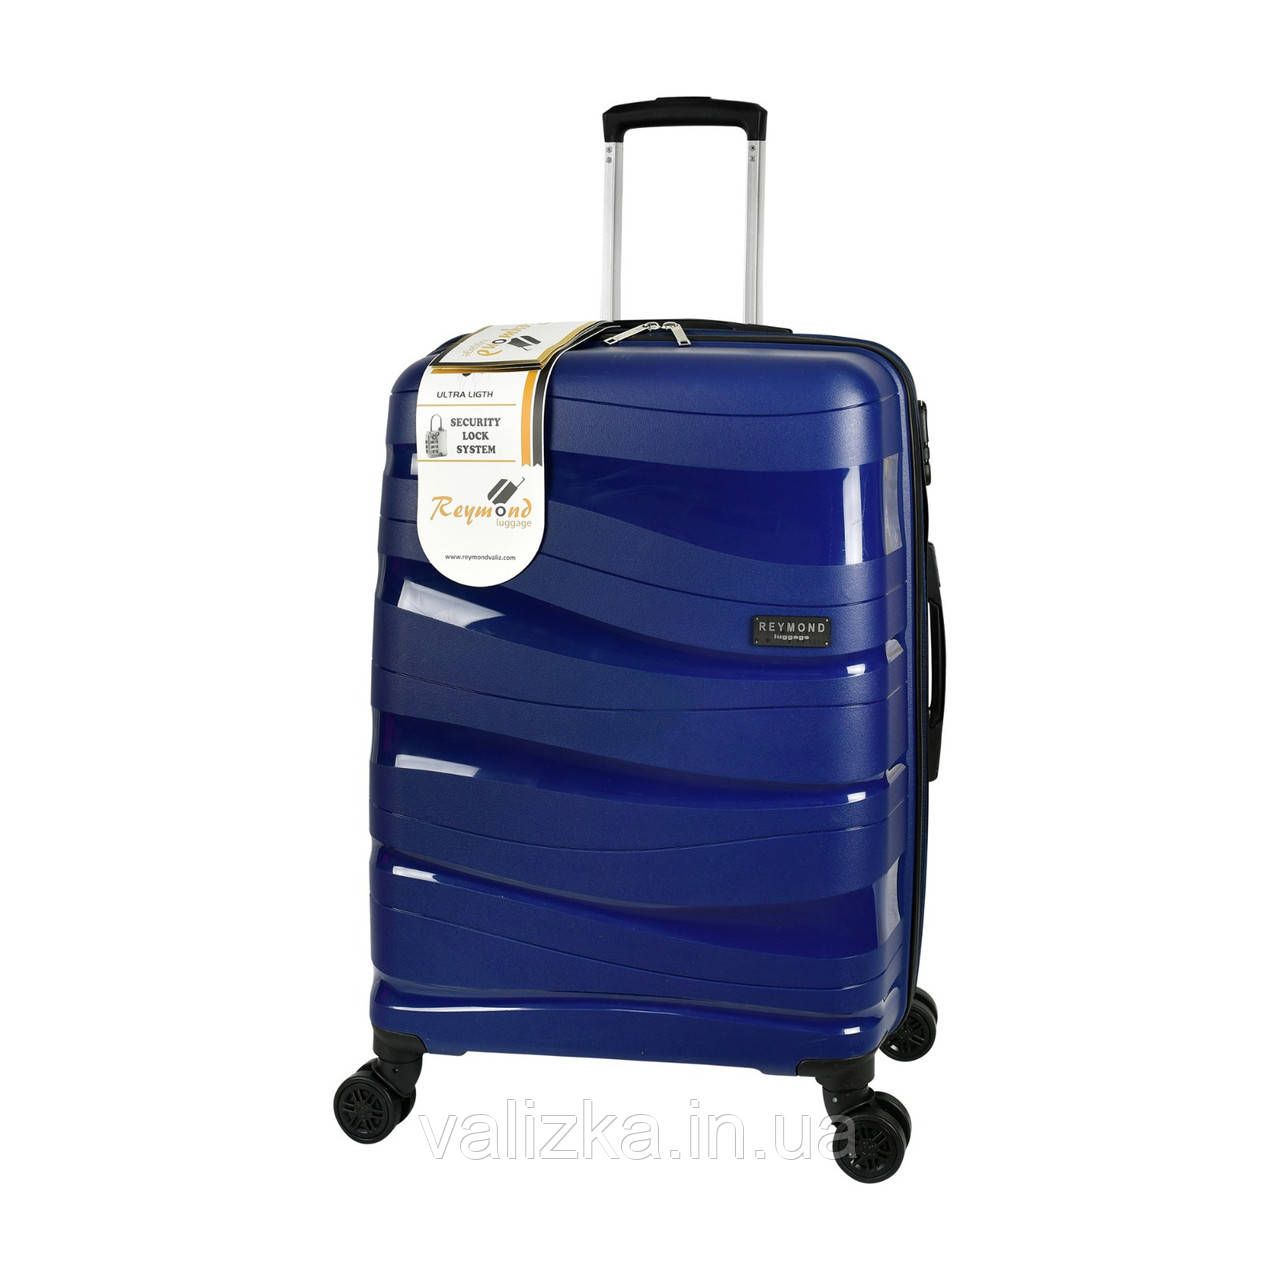 Прочный пластиковый чемодан из полипропилена маленький, ручная кладь темно-синий